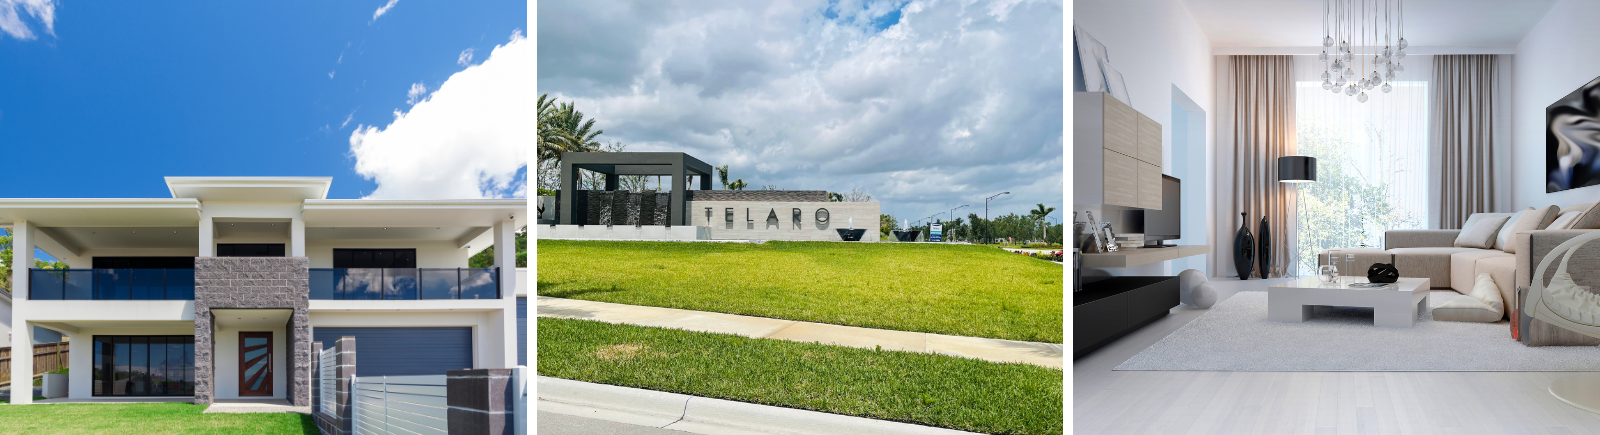 Telaro Homes for Sale